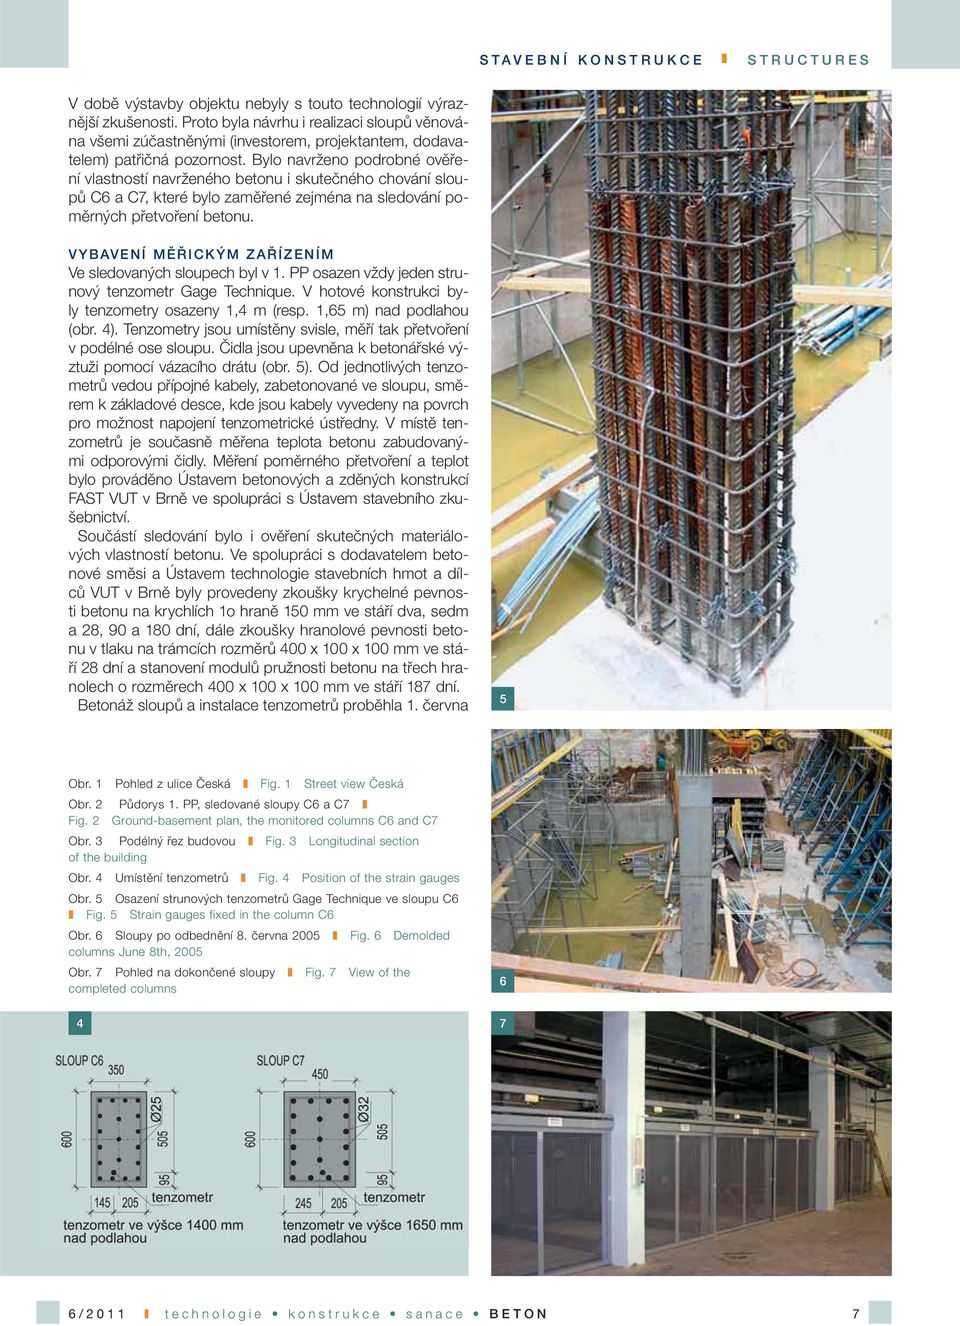 Bylo navrženo podrobné ověření vlastností navrženého betonu i skutečného chování sloupů C6 a C7, které bylo zaměřené zejména na sledování poměrných přetvoření betonu.